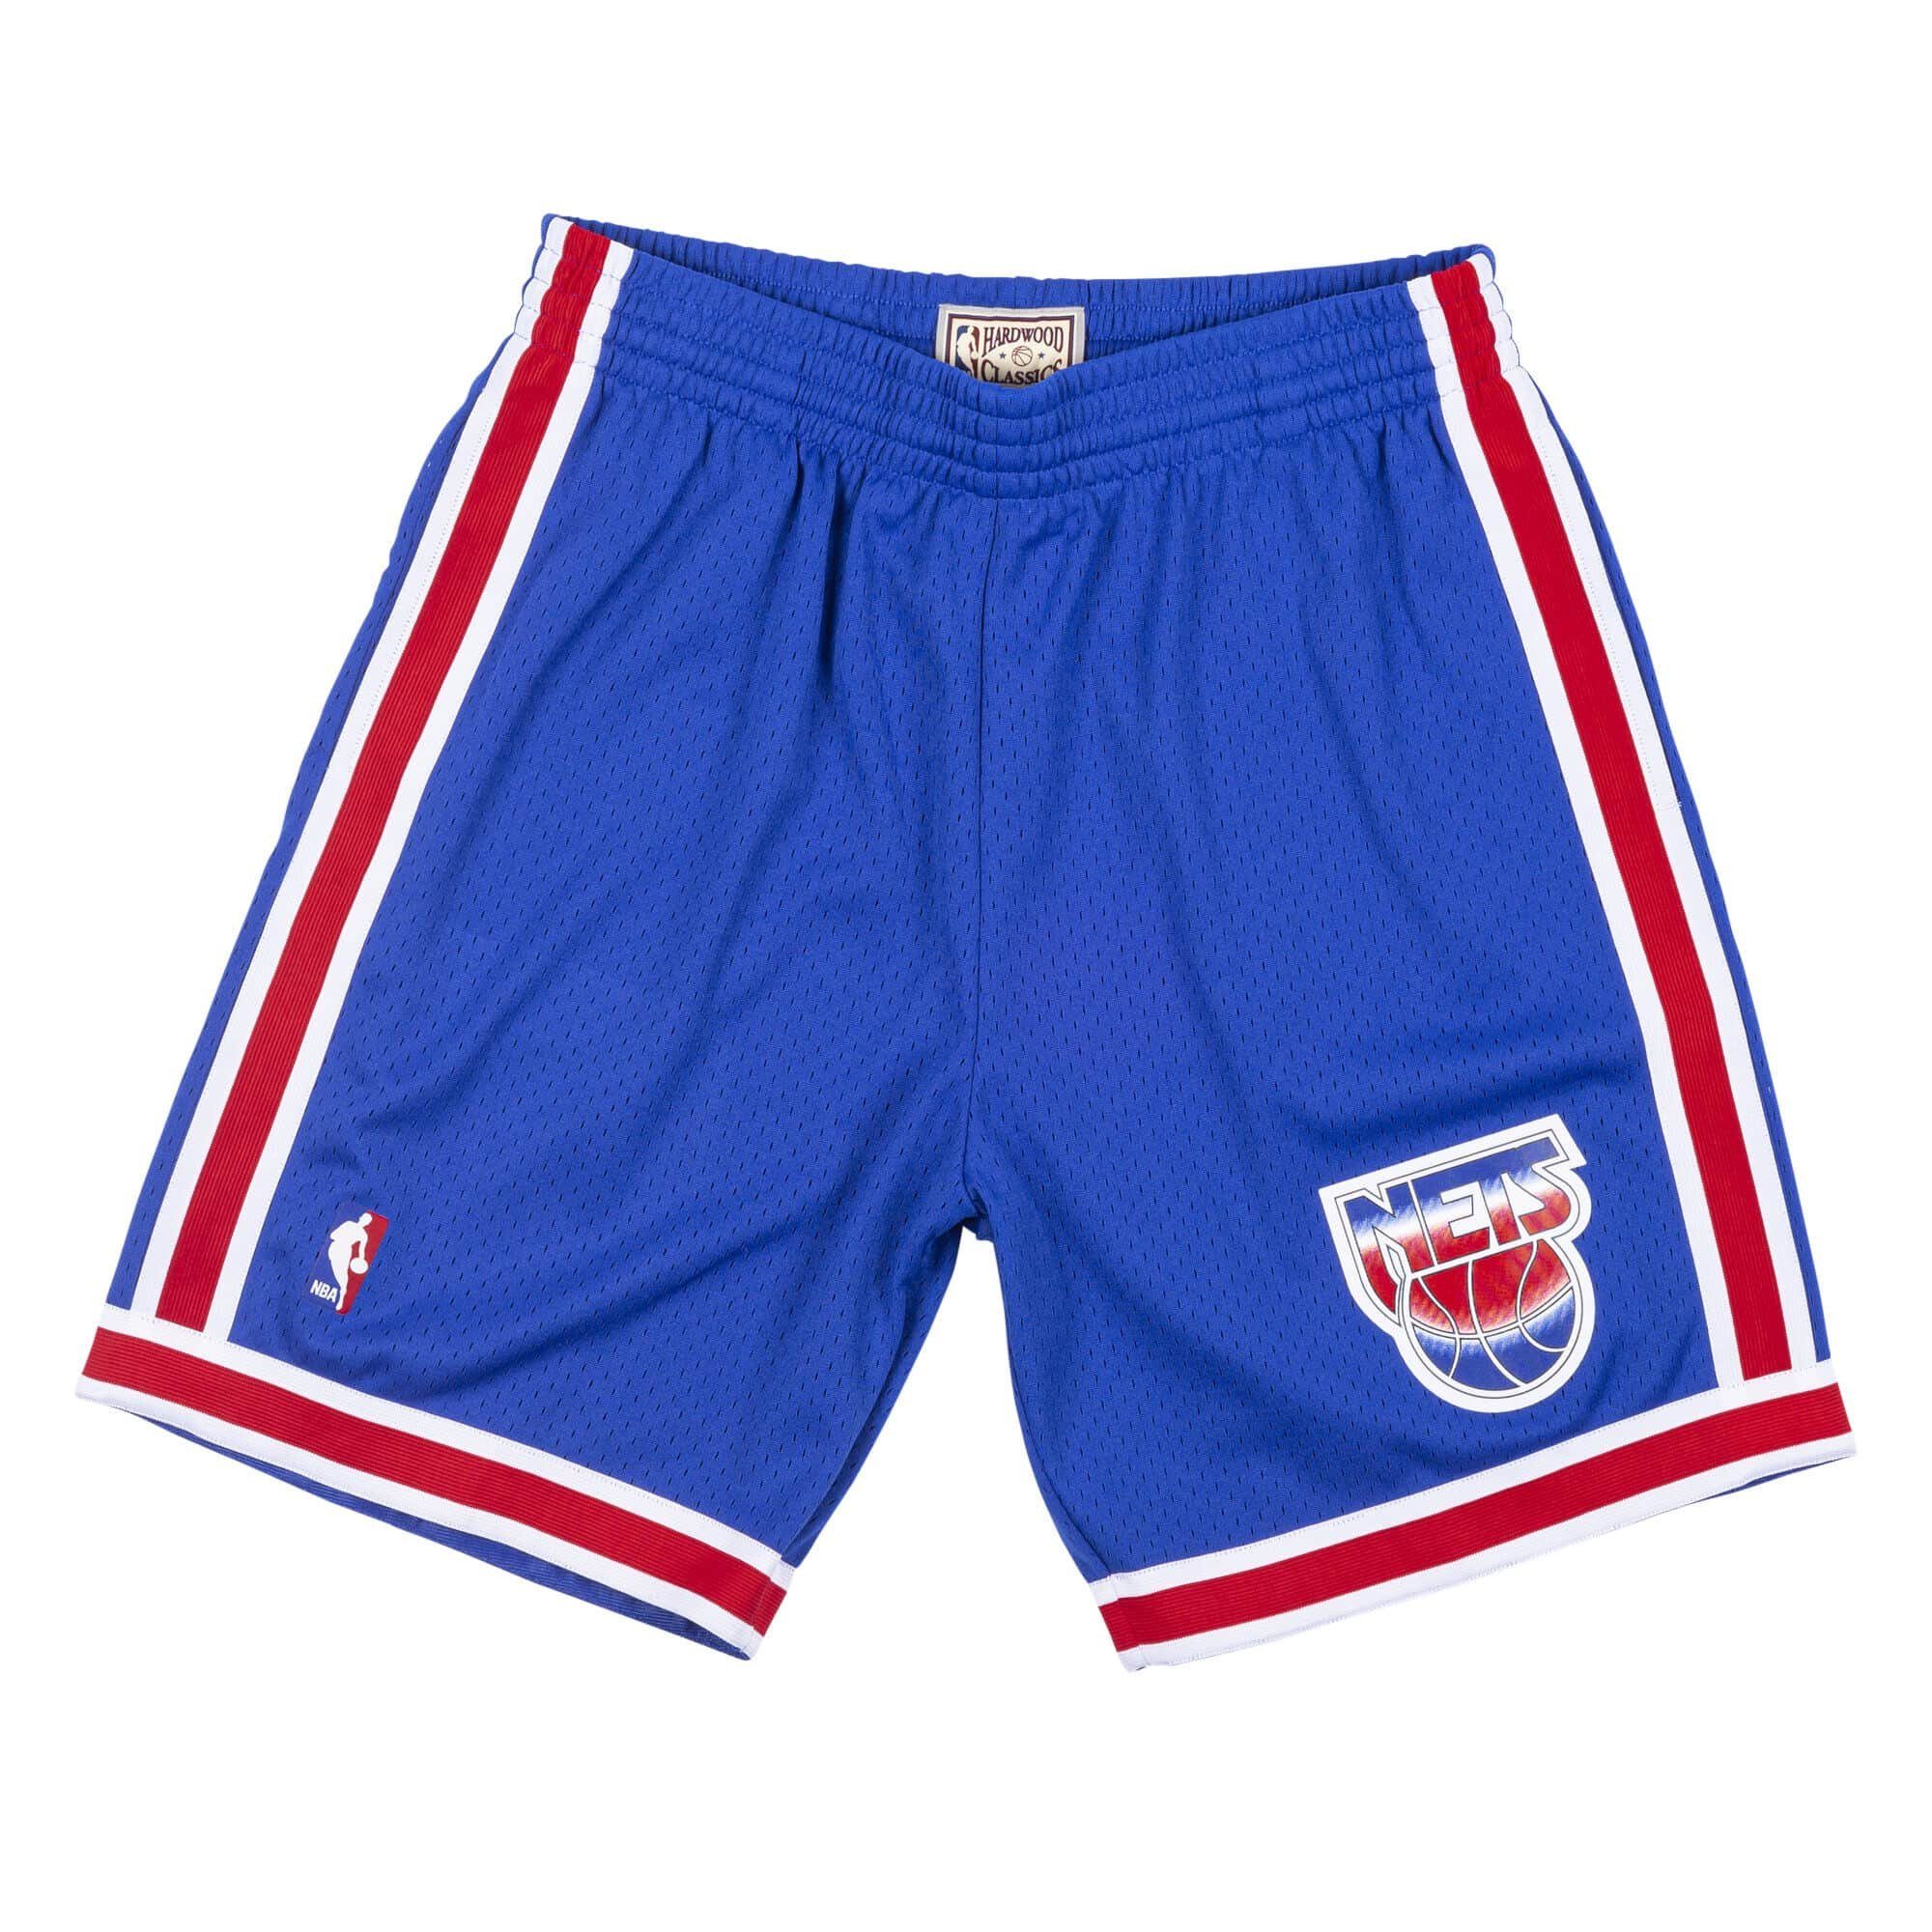 NBA Ness Jersey Road 199394 Swingman Nets & Shorts New Mitchell